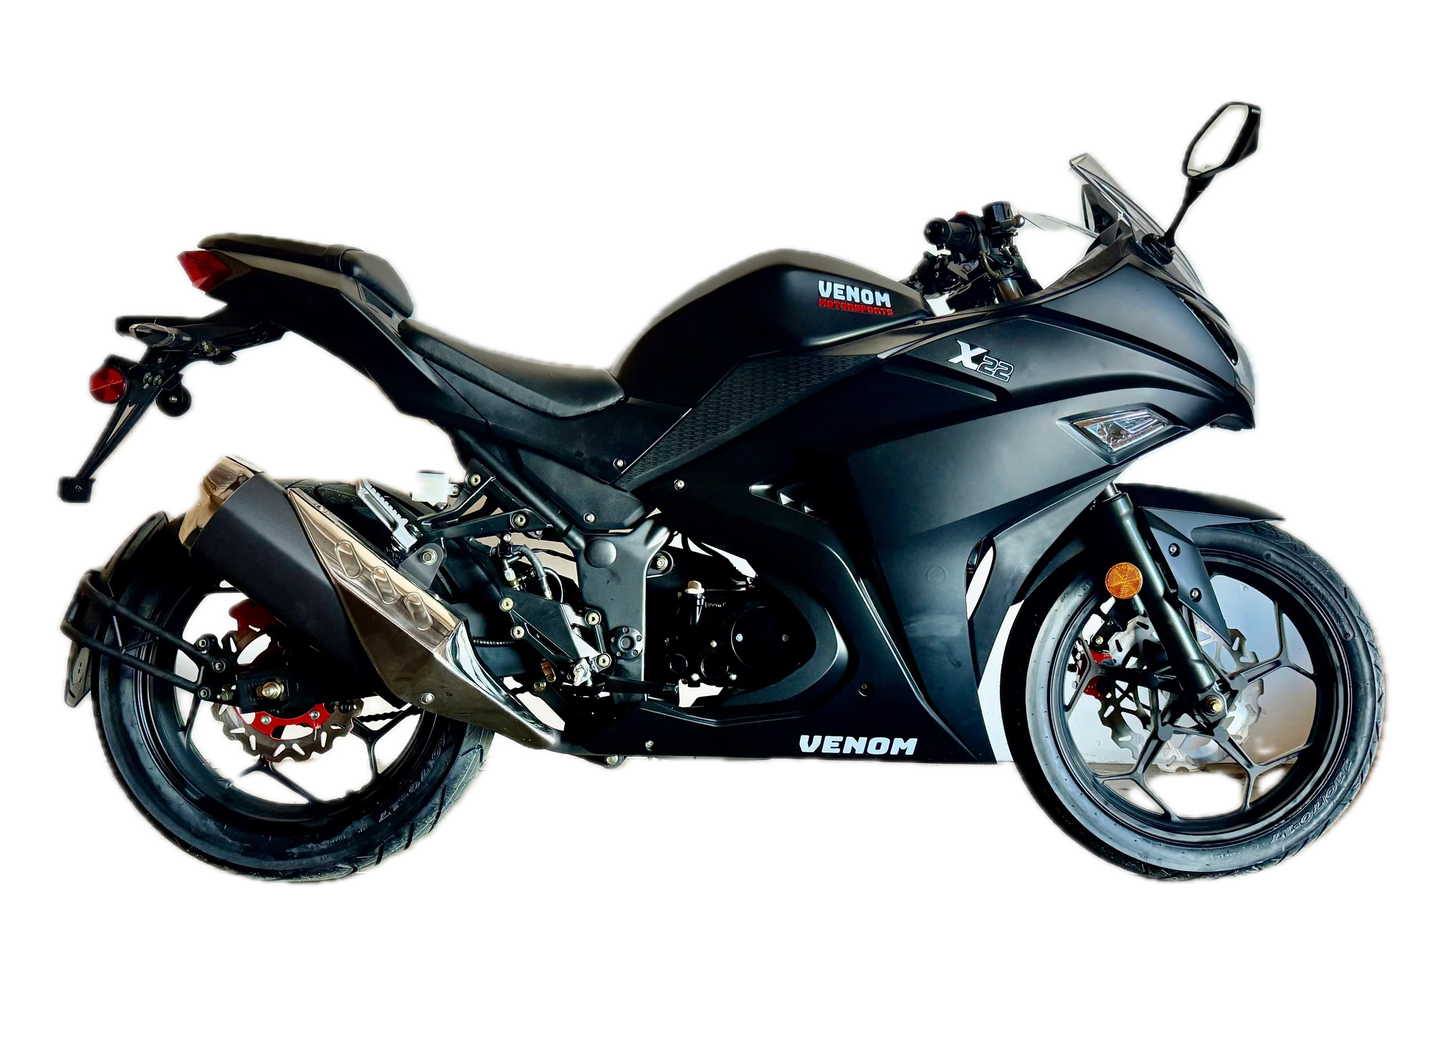  Venom X22 125cc full size motorcycle